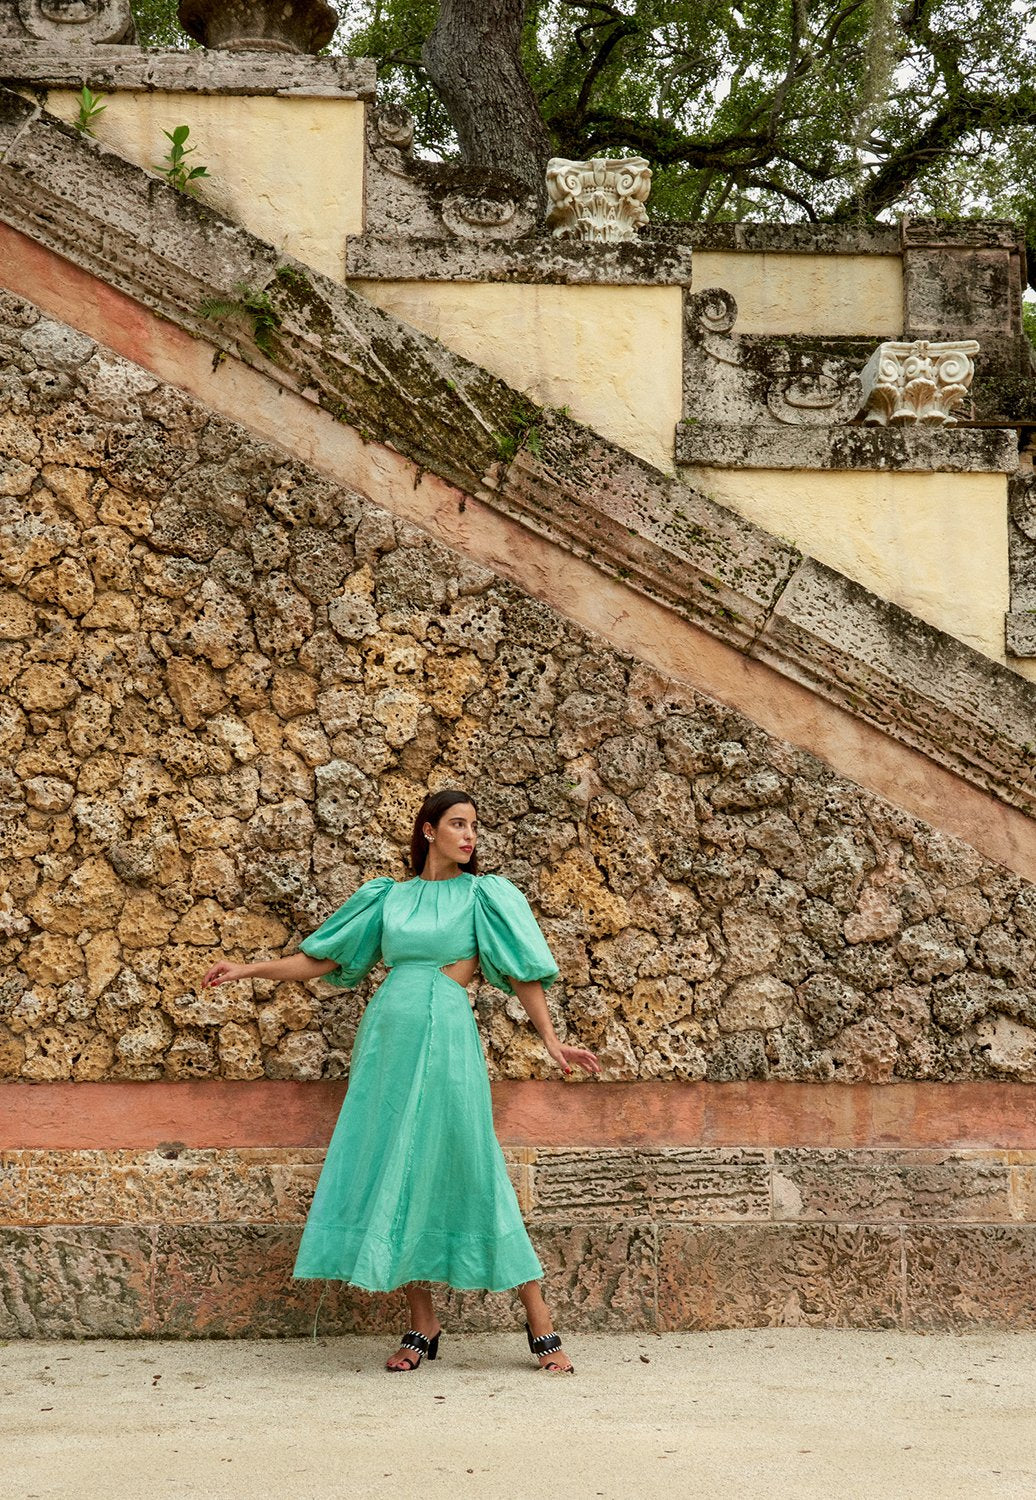 Model posing in front of rock wall in green dress